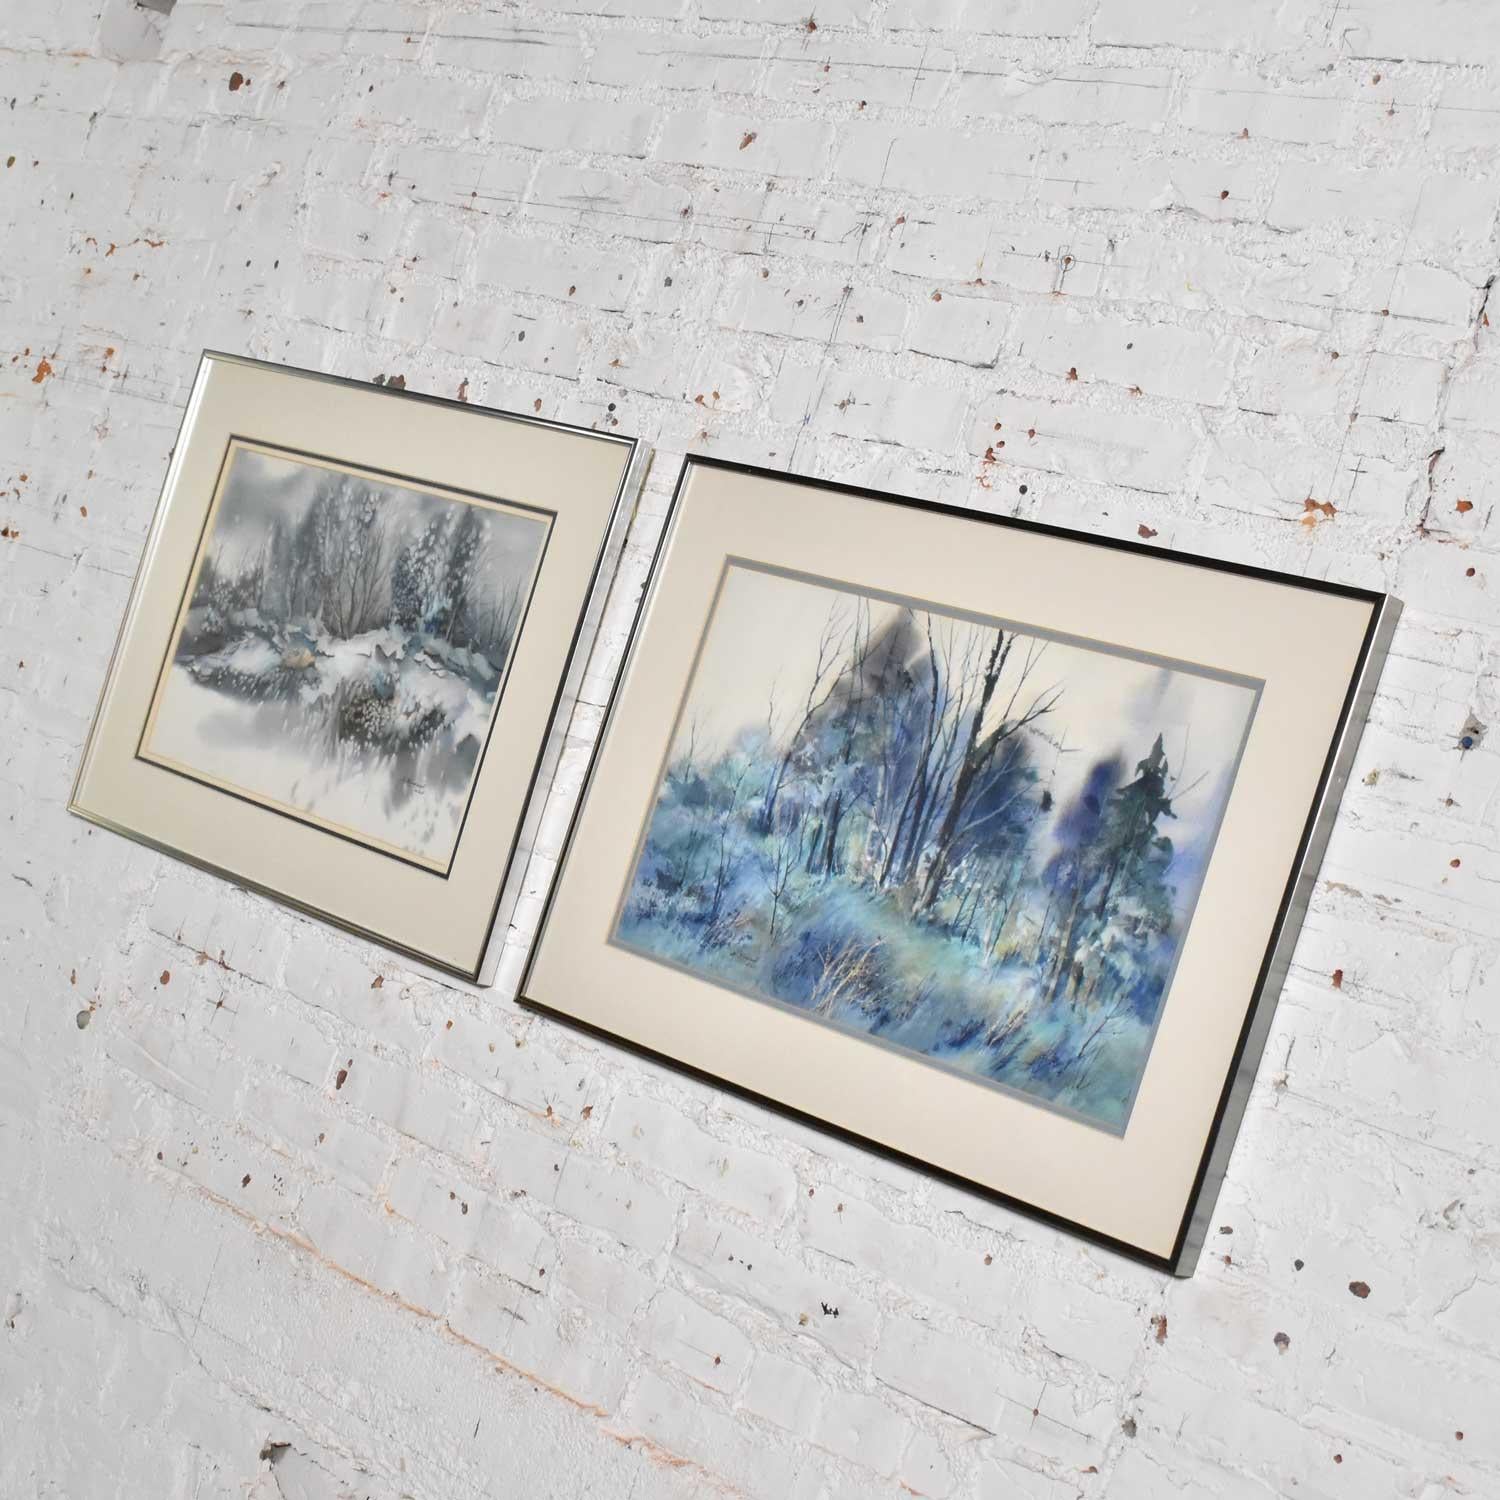 Jolie paire d'aquarelles représentant chacune un paysage d'hiver différent, réalisées par Dorothy M. Reece Kordash. Elles sont en très bon état et dans leurs cadres d'origine. Voir les photos, circa 1970-1980.

Super ! Nous sommes fiers de pouvoir